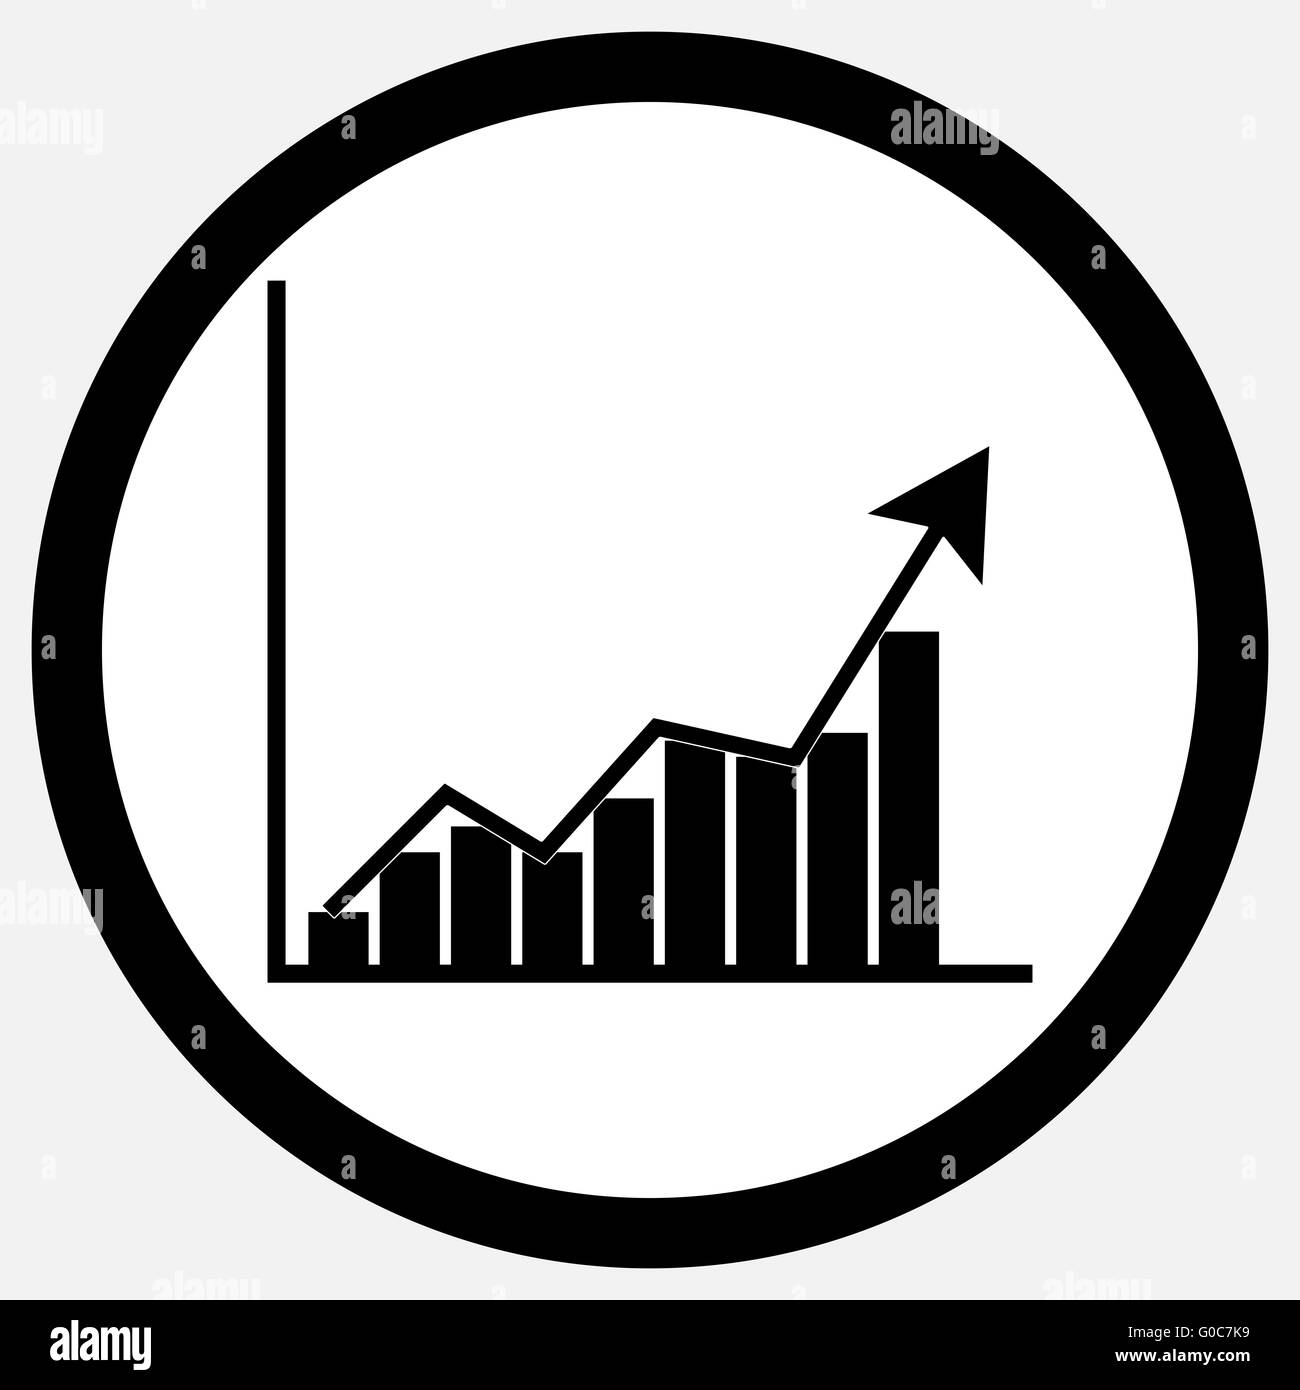 Icono gráfico de crecimiento del blanco y negro. Concepto de crecimiento y el crecimiento, y el crecimiento del negocio gráfico, gráficos y gráficas y estadísticas de crecimiento busin Foto de stock